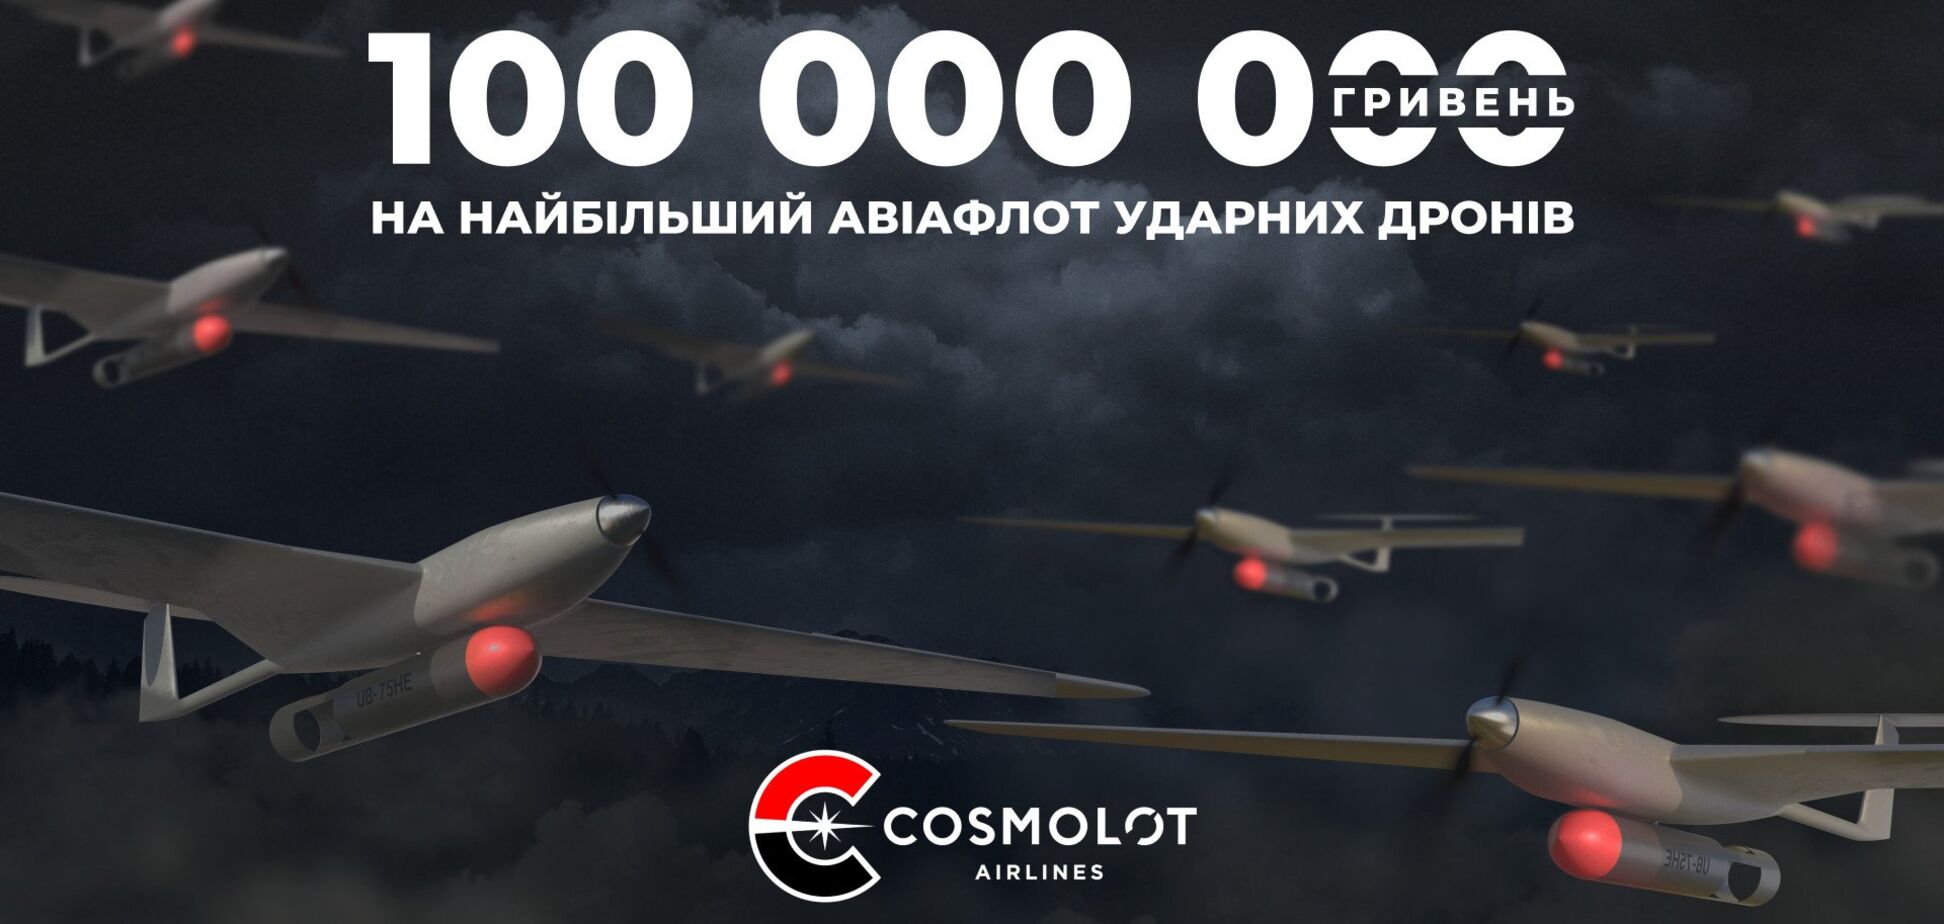 Cosmolot Airlines: 100 млн грн на найбільший авіафлот ударних дронів